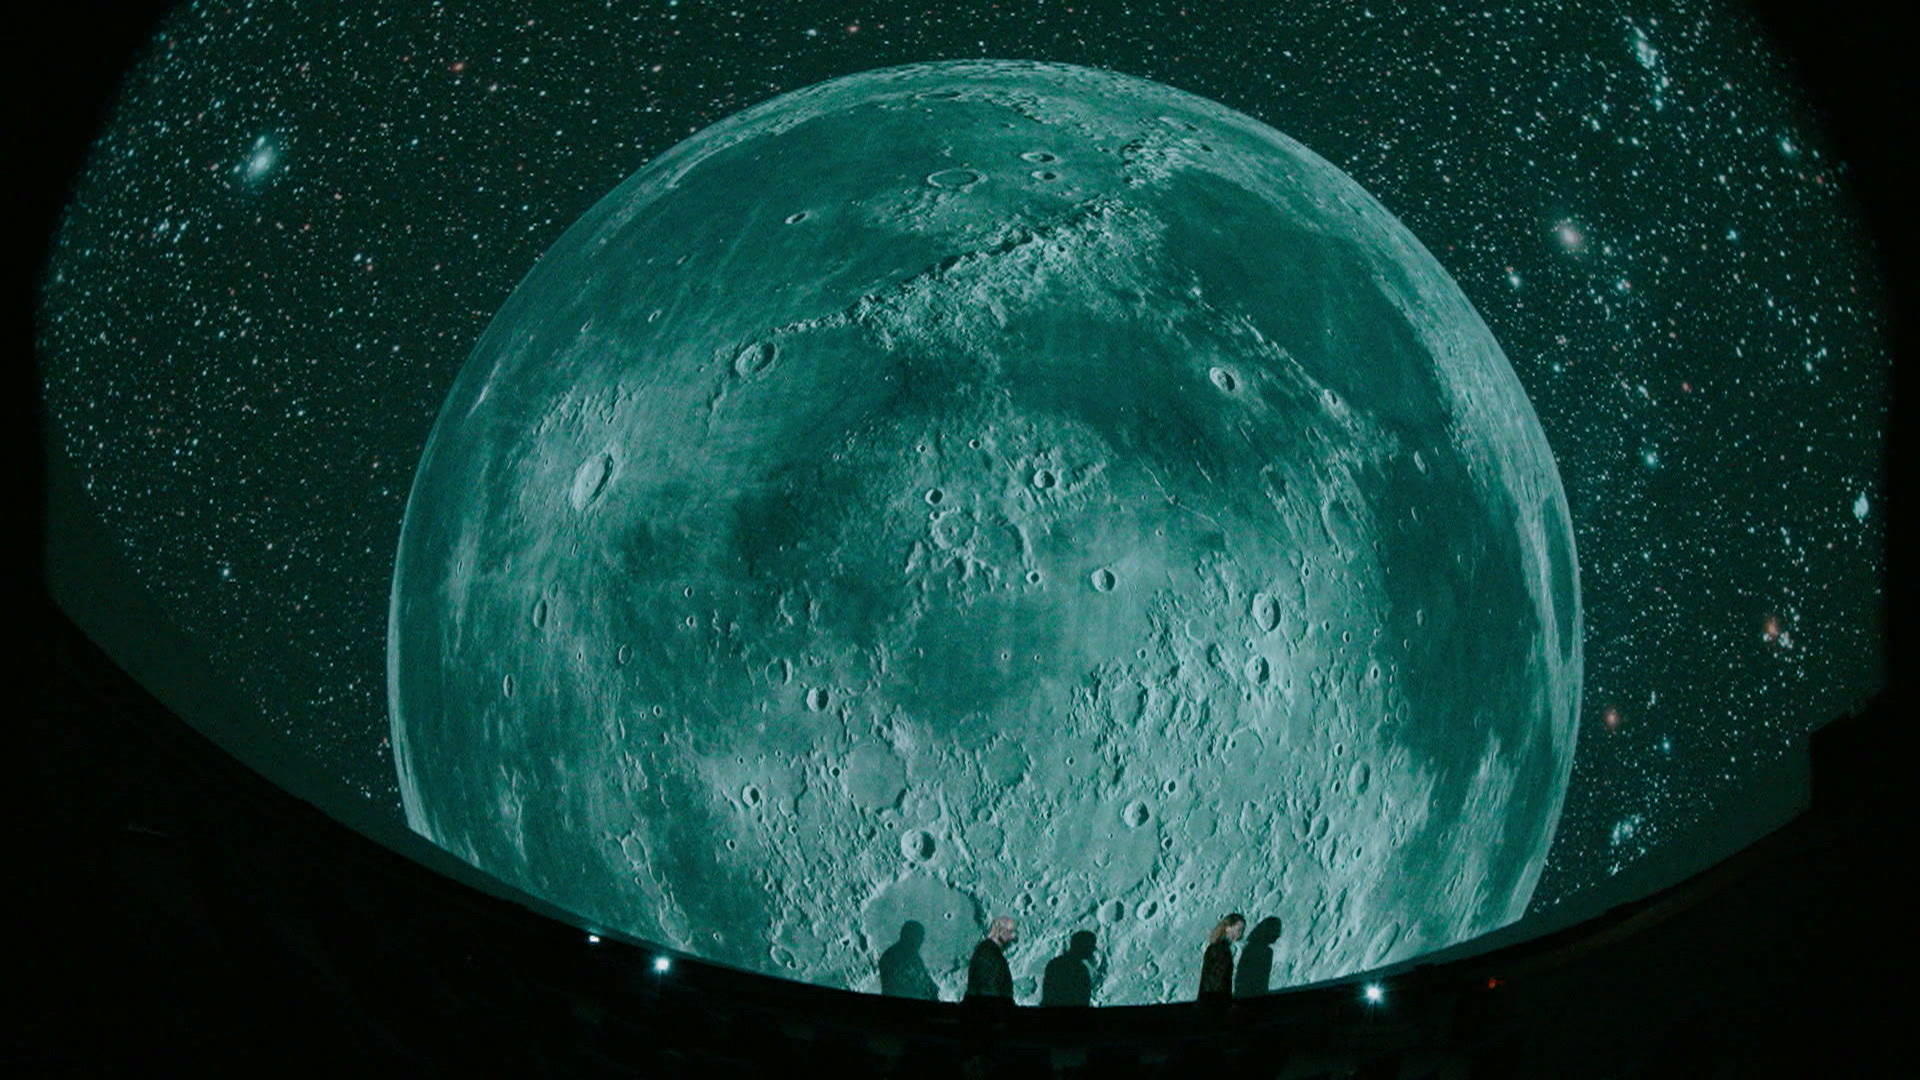 Beeinflusst der Mond wirklich die Periode von Frauen?  Ergebnisse kosmischer Studien